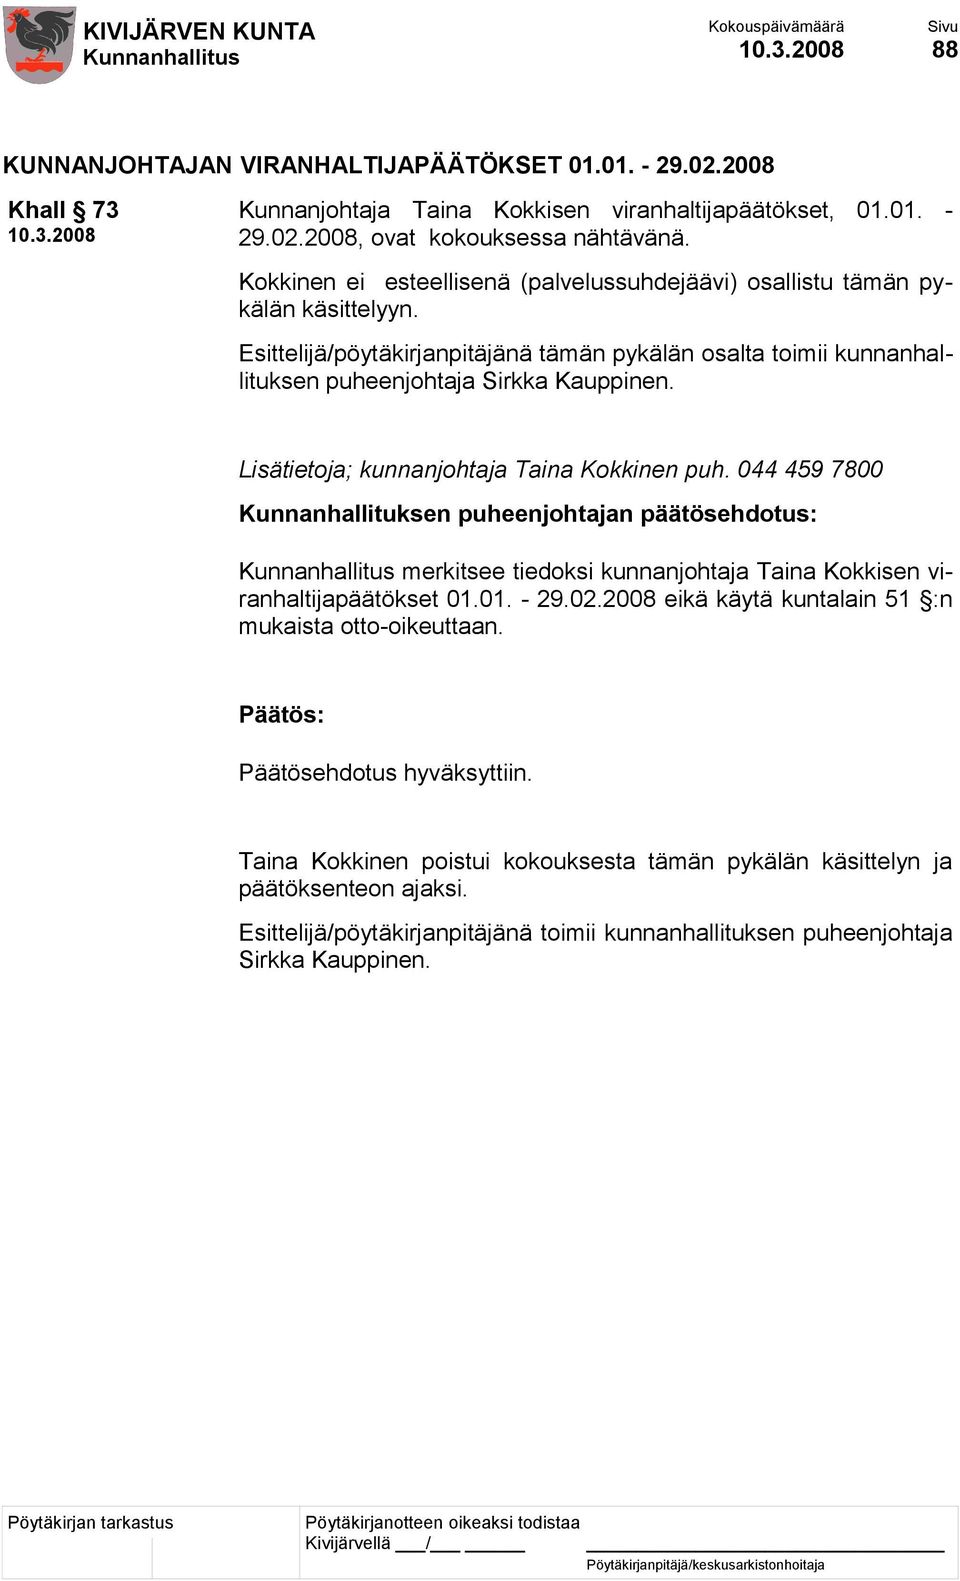 Lisätietoja; kunnanjohtaja Taina Kokkinen puh. 044 459 7800 Kunnanhallituksen puheenjohtajan päätösehdotus: merkitsee tiedoksi kunnanjohtaja Taina Kokkisen viranhaltijapäätökset 01.01. - 29.02.